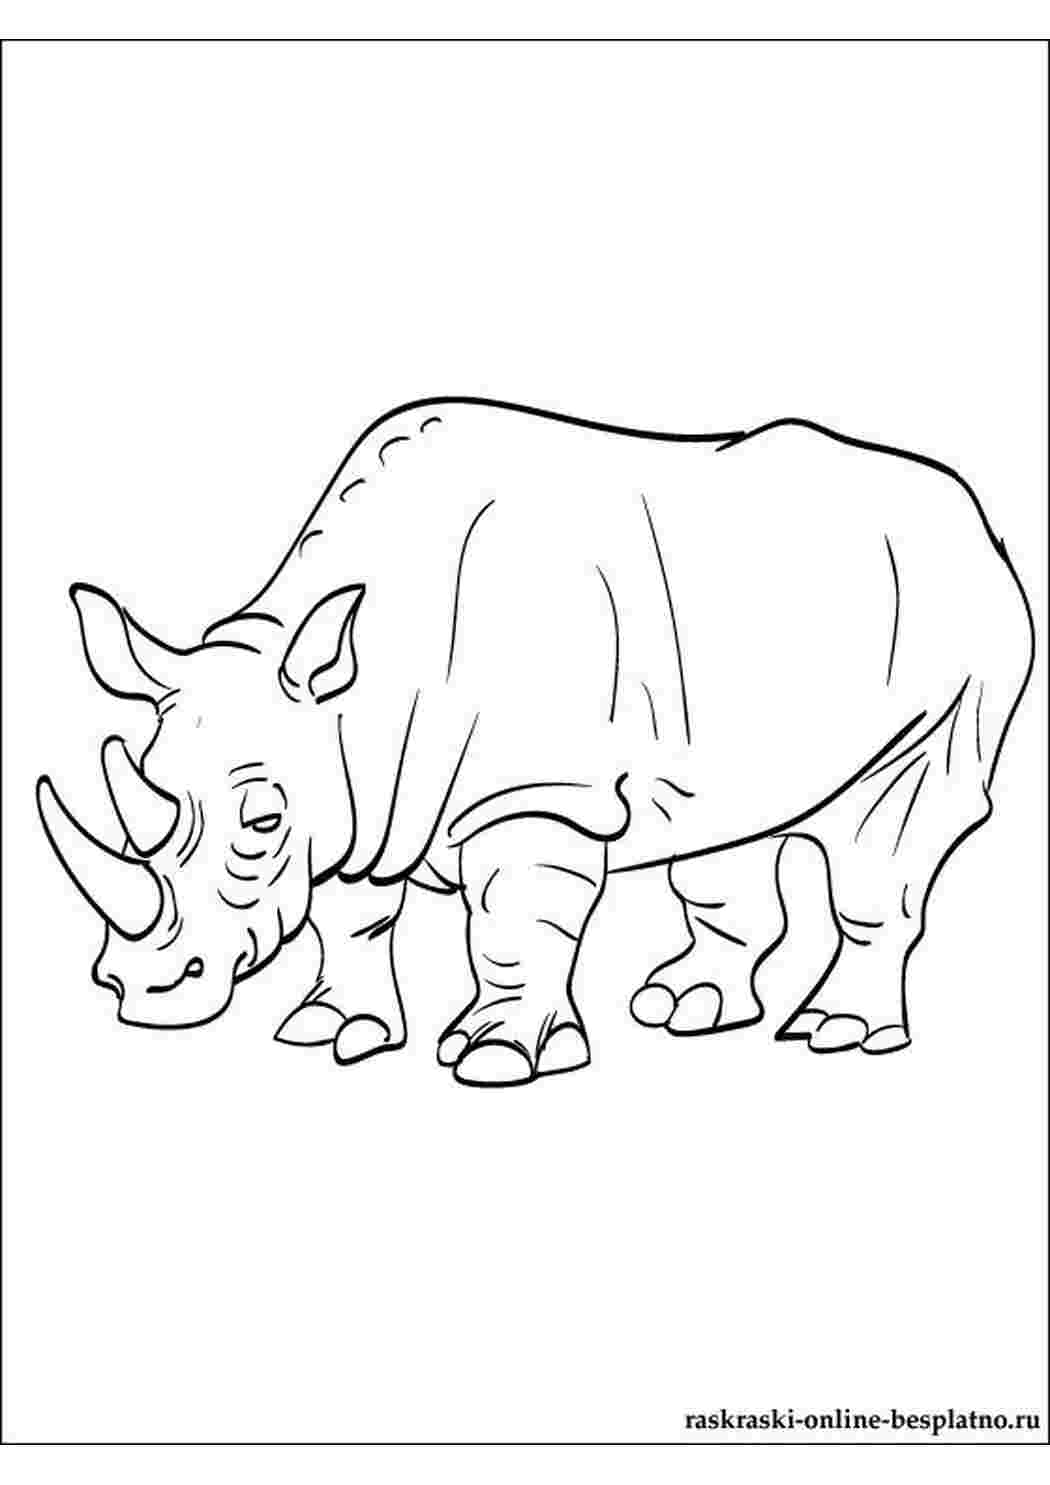 Носорог рисунок для детей раскраска